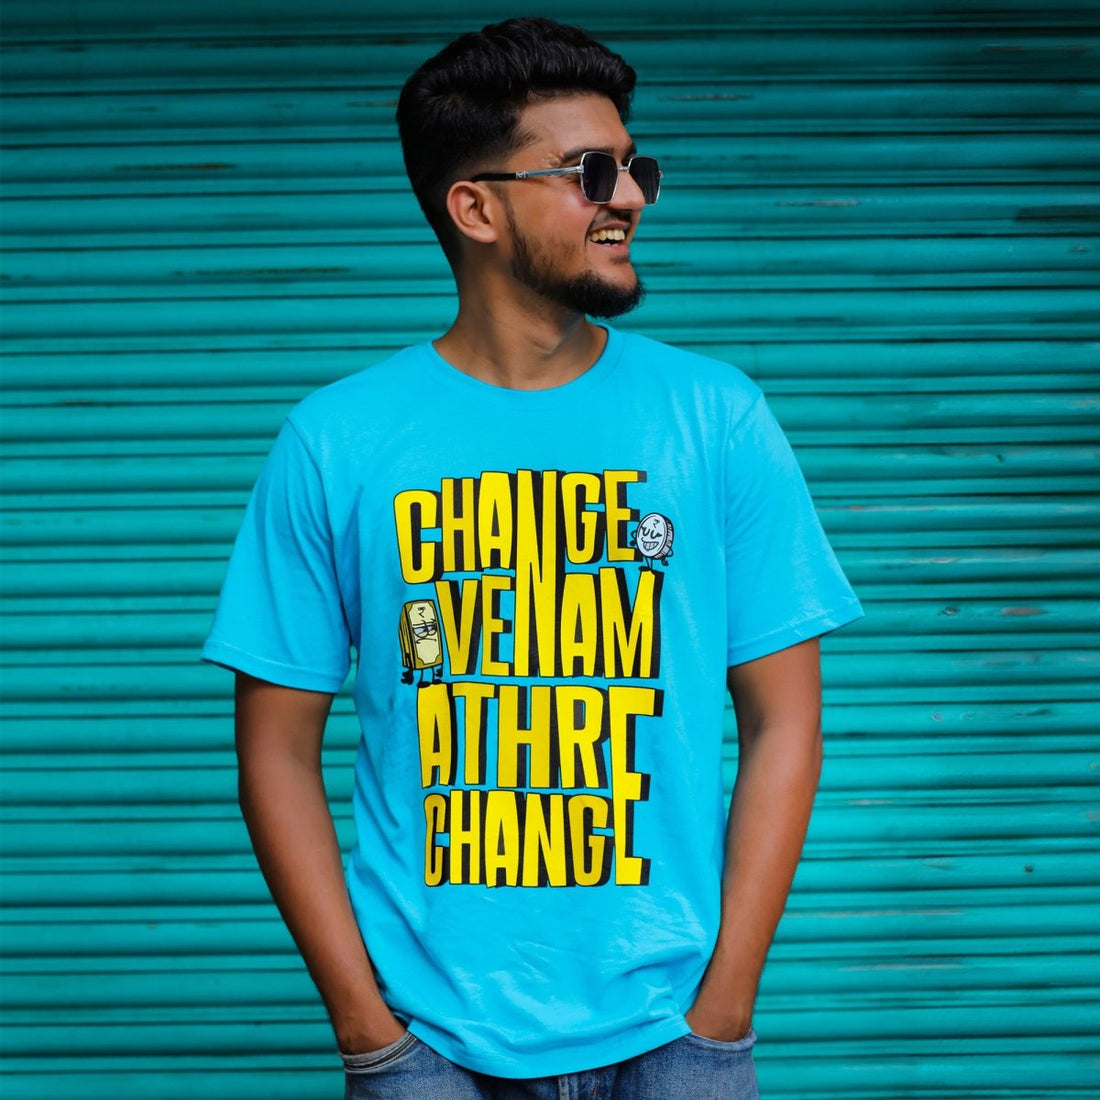 Change Venam Printed T-Shirt for Men